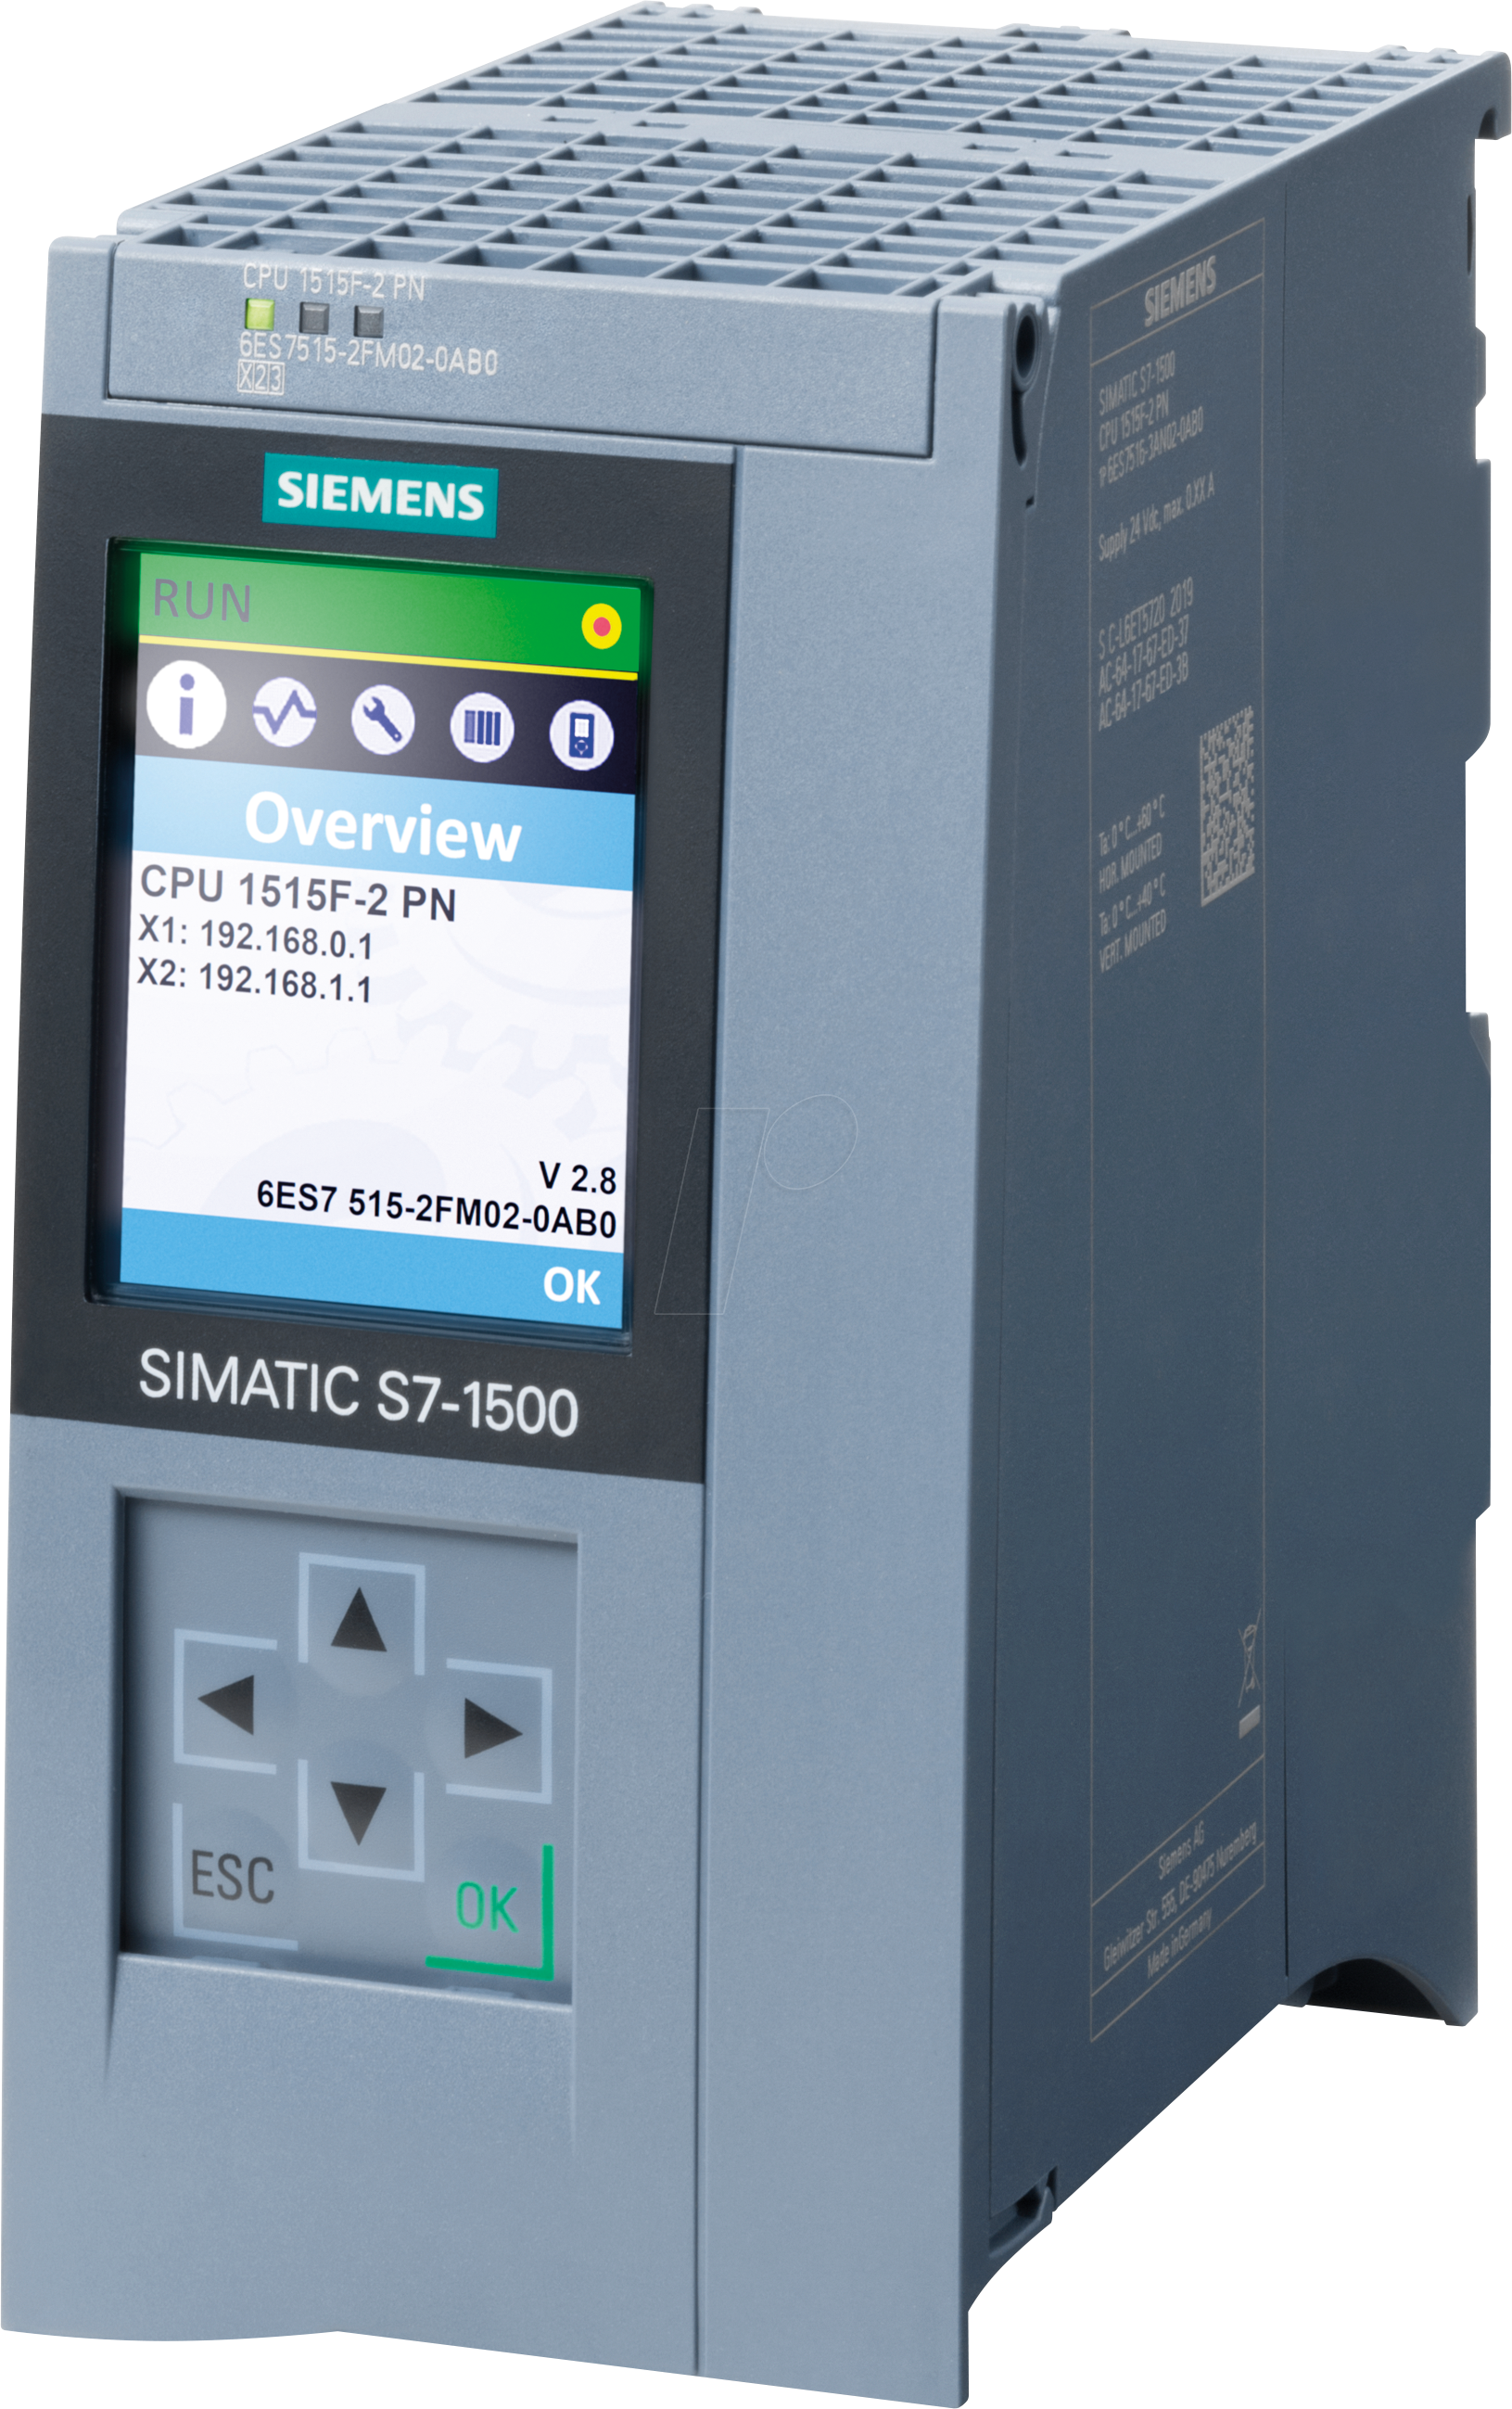 SIMATIC S7-1500F - SIMATIC S7-1500F, CPU 1515F-2 PN